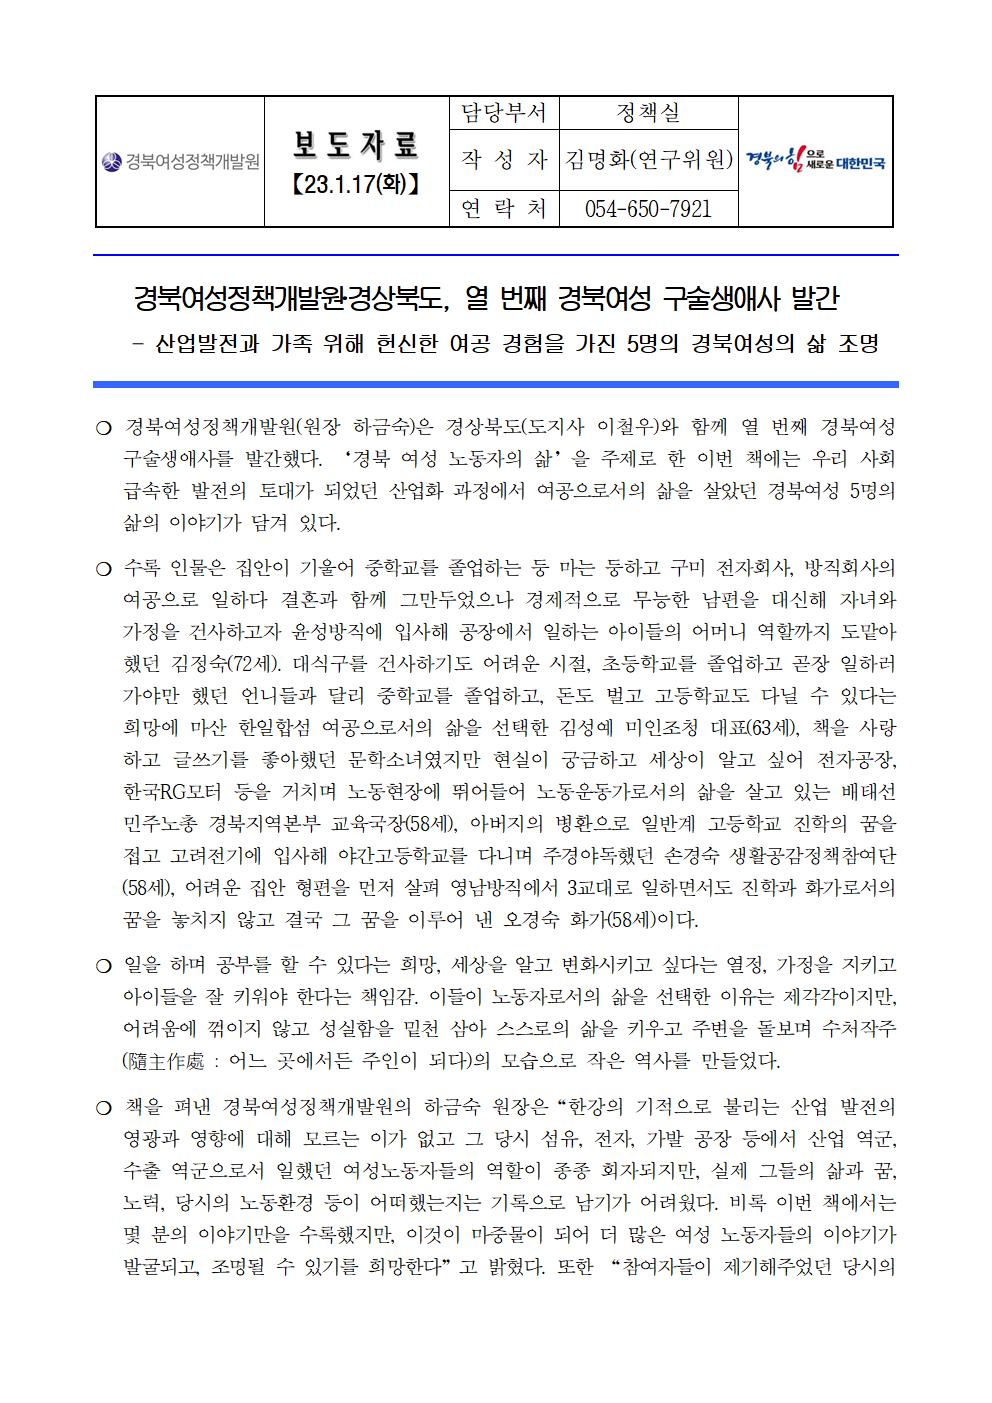 보도자료_2022 경북여성 구술생애사001.jpg 이미지를 클릭하시면 원본크기를 보실 수 있습니다.